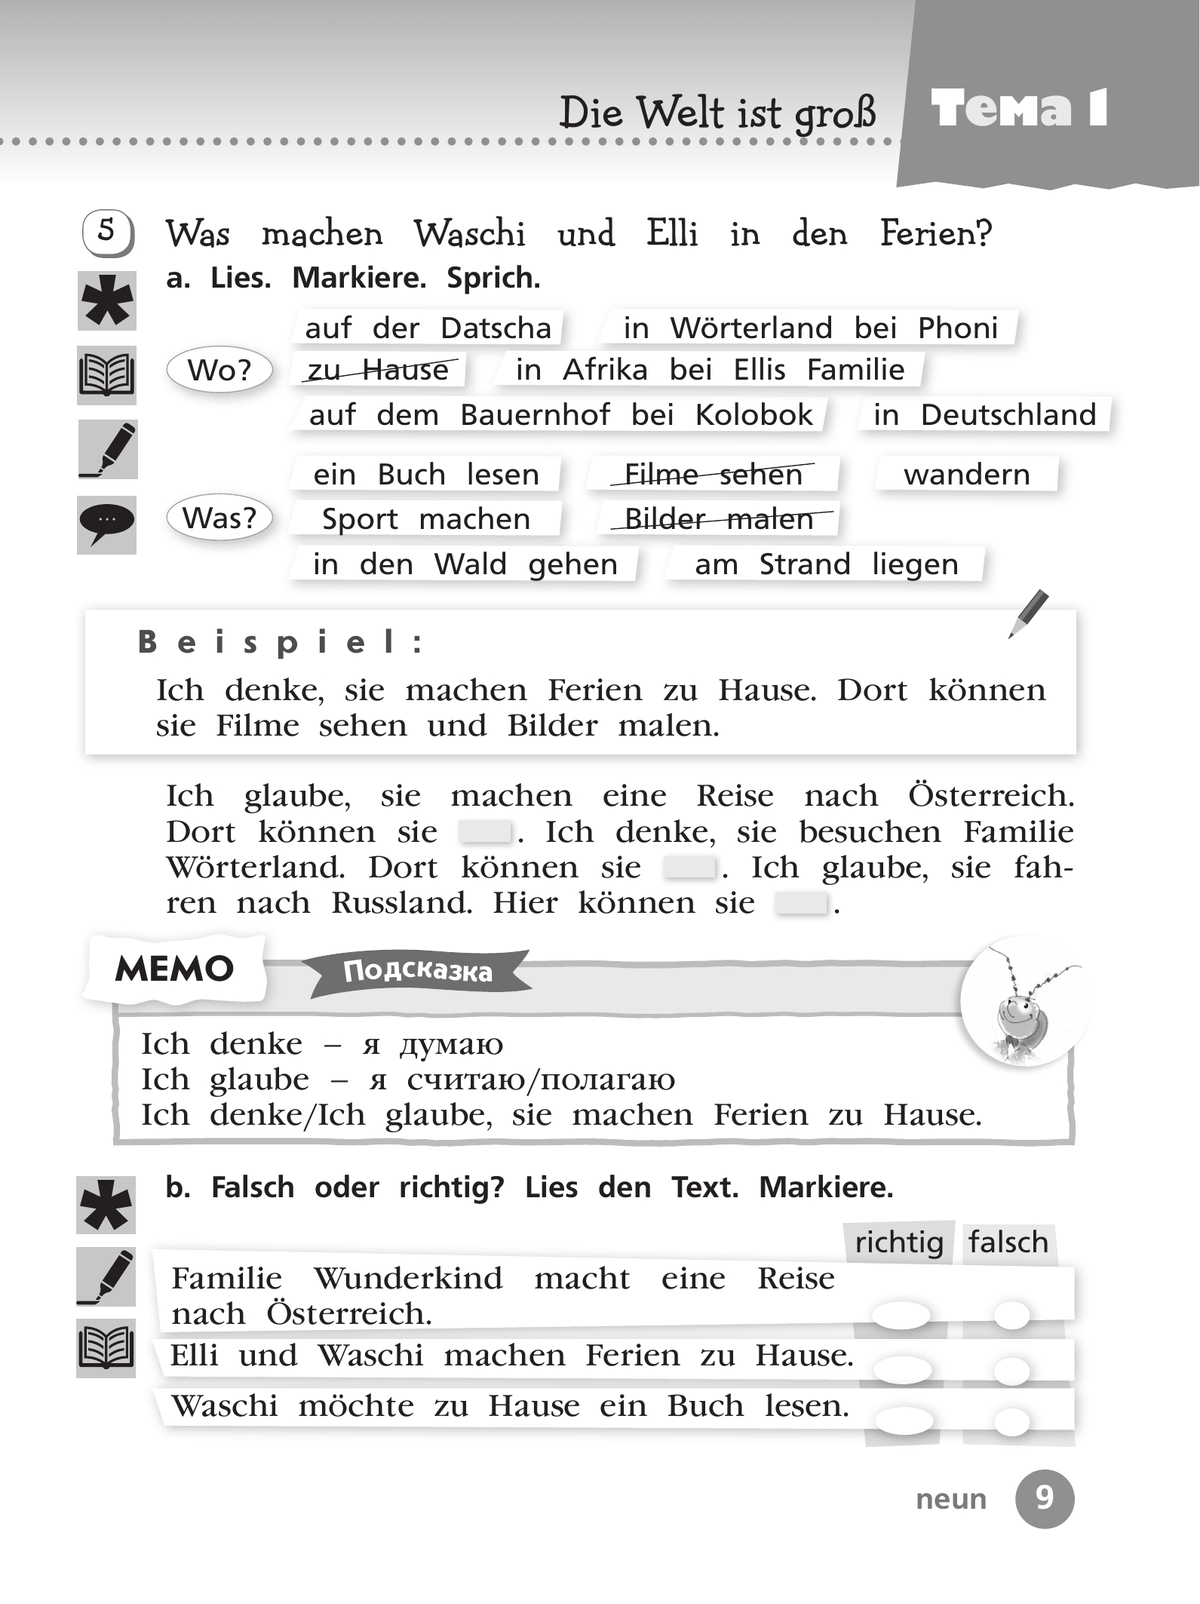 Немецкий язык. Рабочая тетрадь. 3 класс В 2-х ч. Ч. 1 6